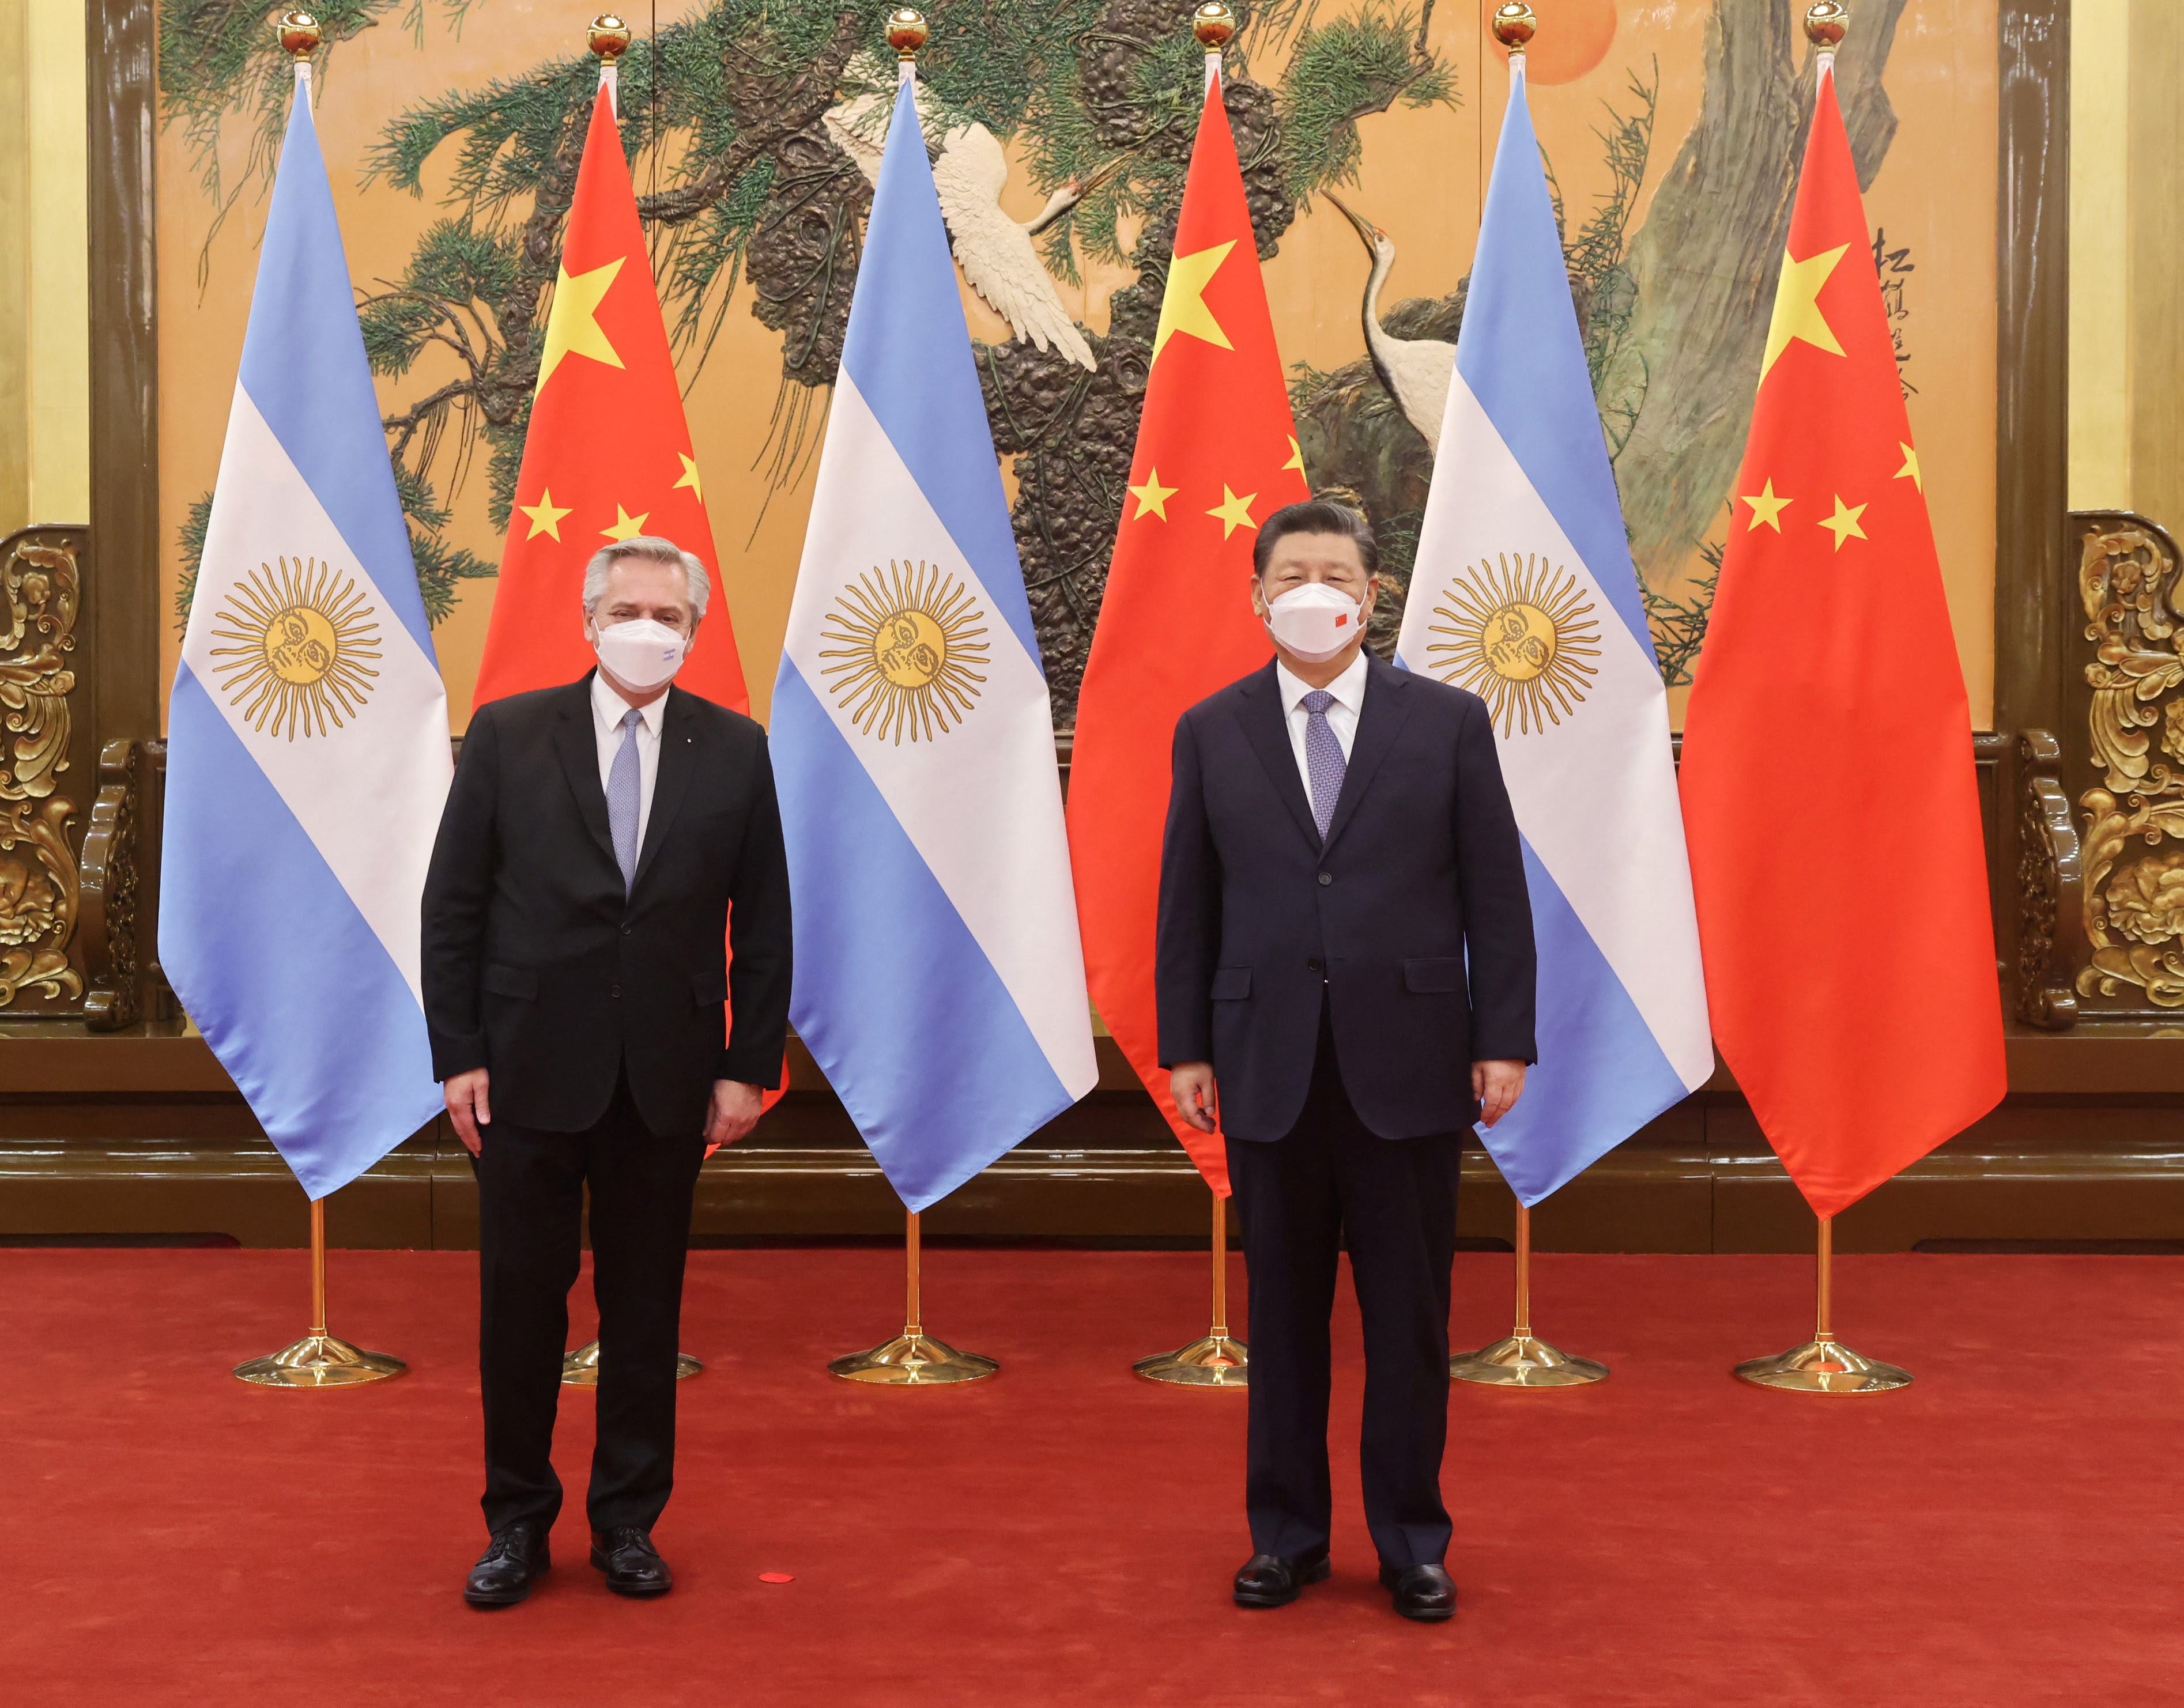 El presidente de China, Xi Jinping, junto al presidente de Argentina, Alberto Fernández, durante su reunión en Beijing, China, el 6 de febrero de 2022. Foto tomada el 6 de febrero de 2022. Presidencia de Argentina/Handout via REUTERS